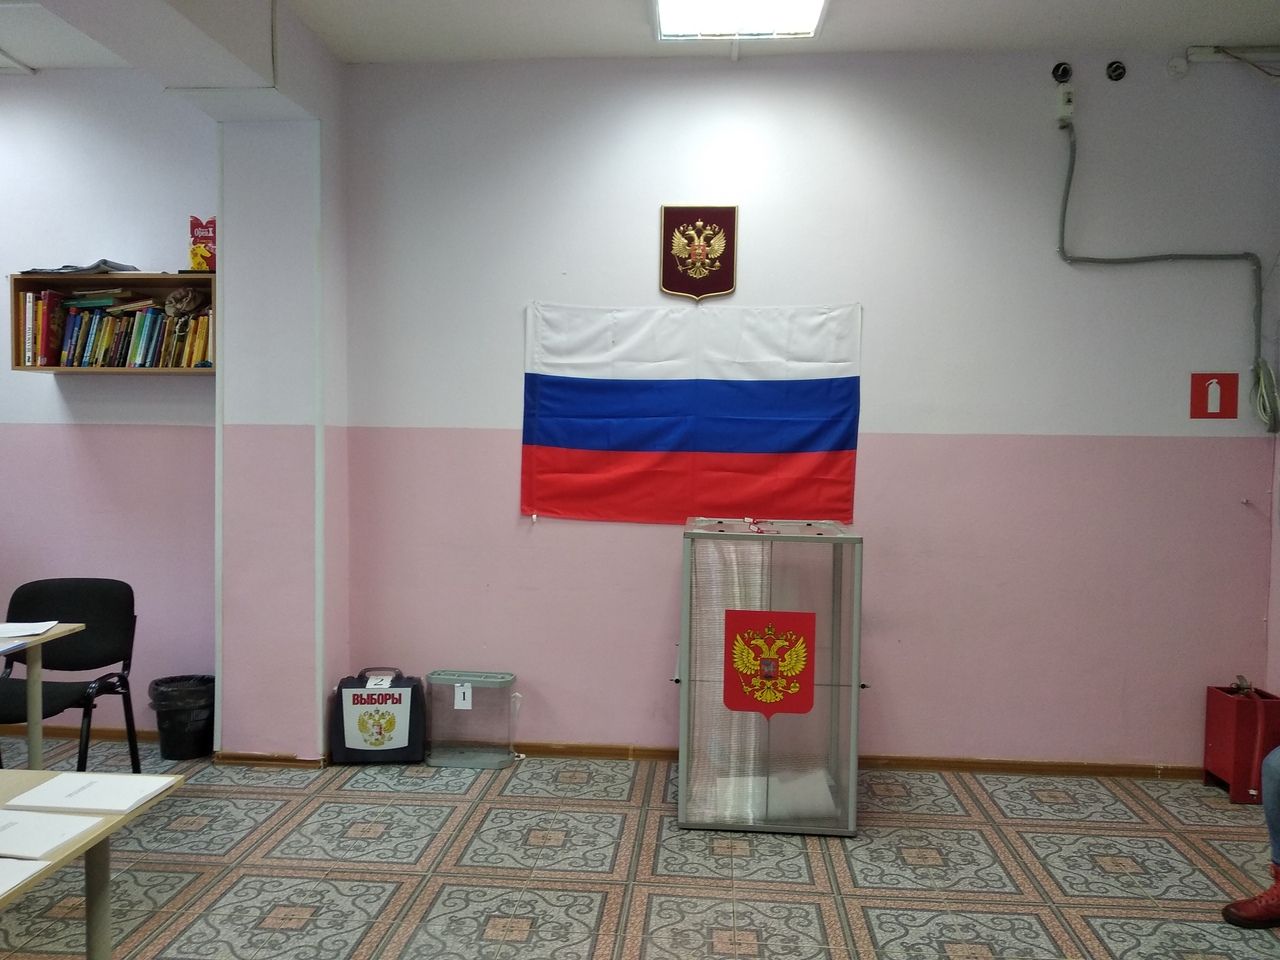 Костромская область выборы явка на каком месте. Явка на выборах кострома